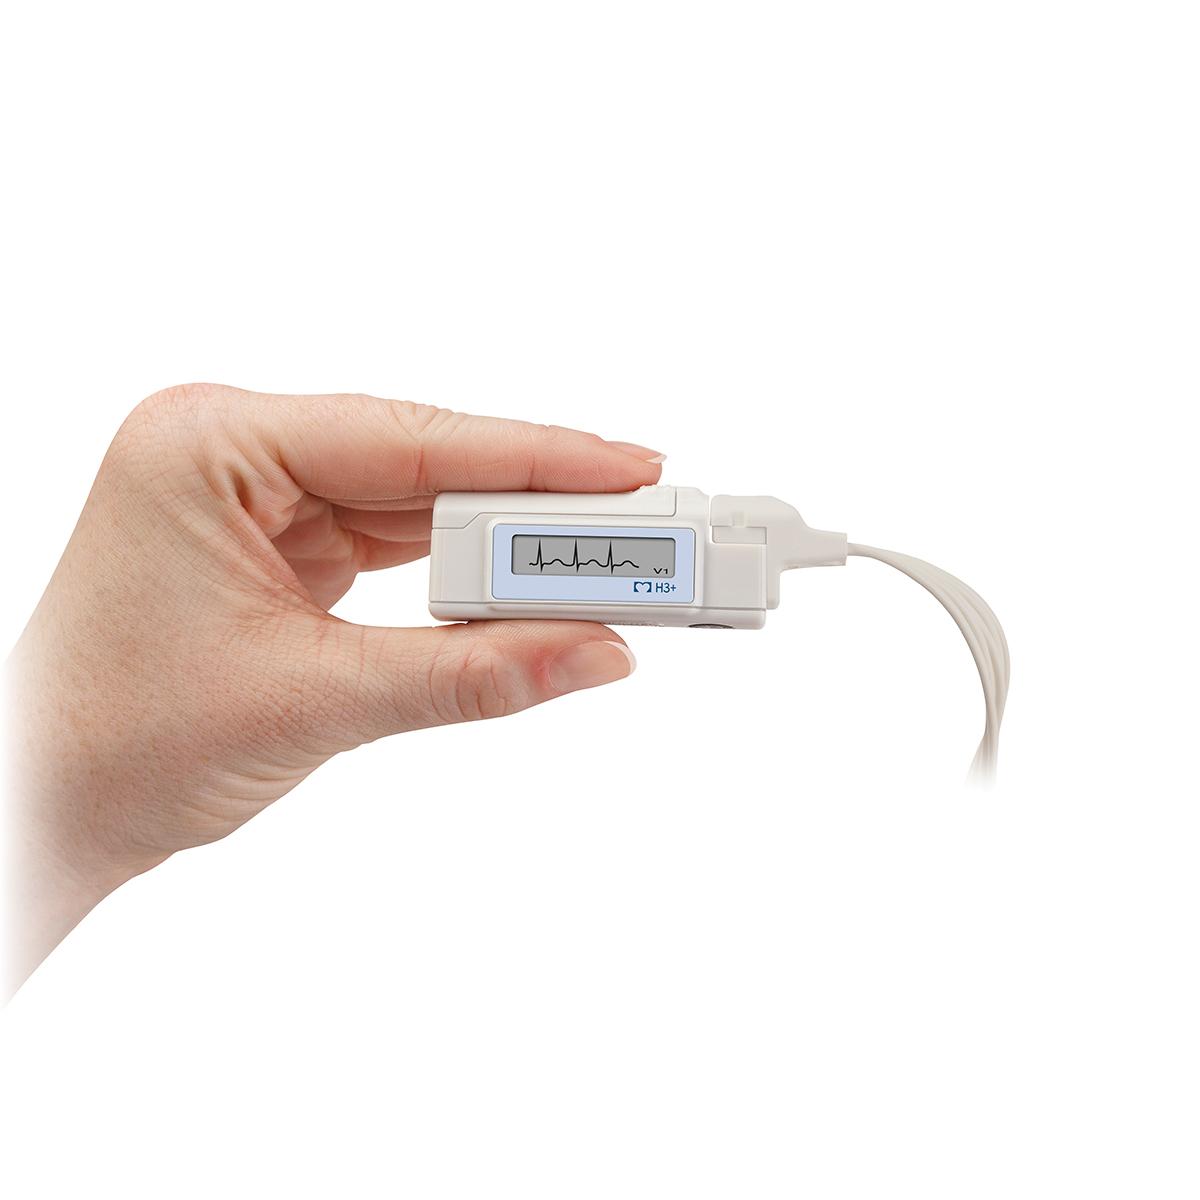 Ein H3+ Digitaler Langzeit-EKG-Recorder wird zwischen den Fingern gehalten, wobei auf dem Bildschirm Kurven angezeigt werden